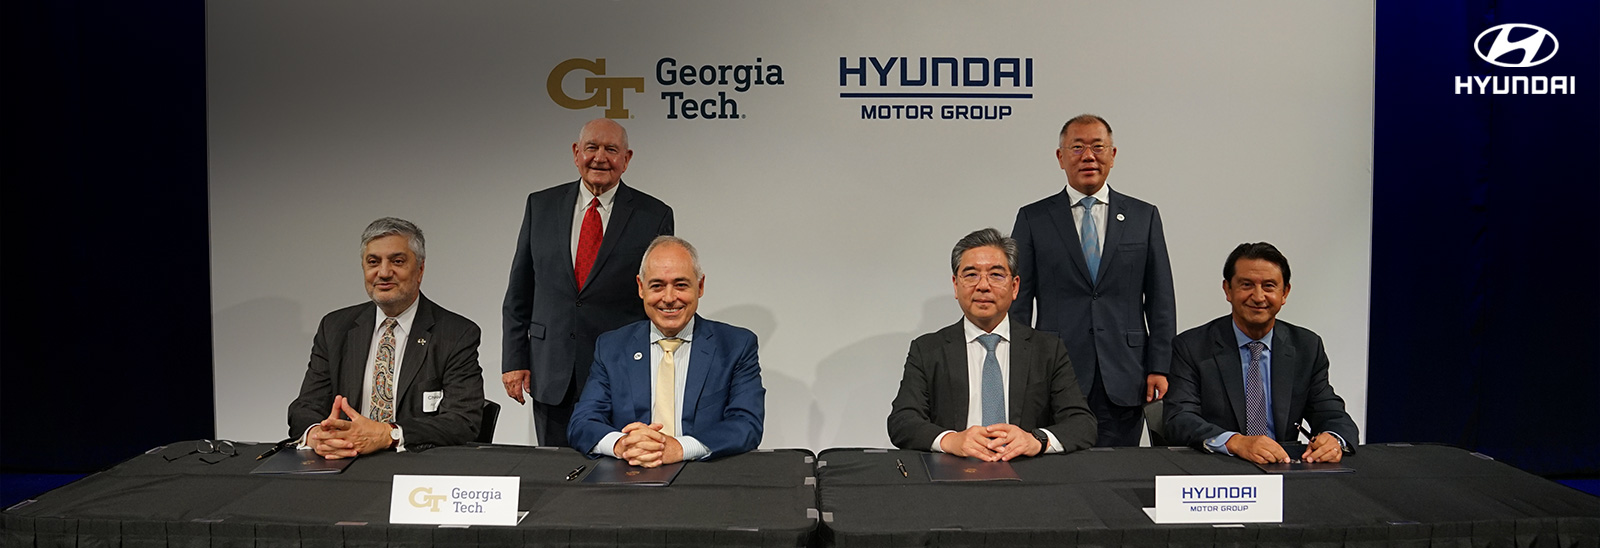 Ejecutivos de Hyundai y Georgia Tec en firma de acuerdo para impulsar la movilidad futura